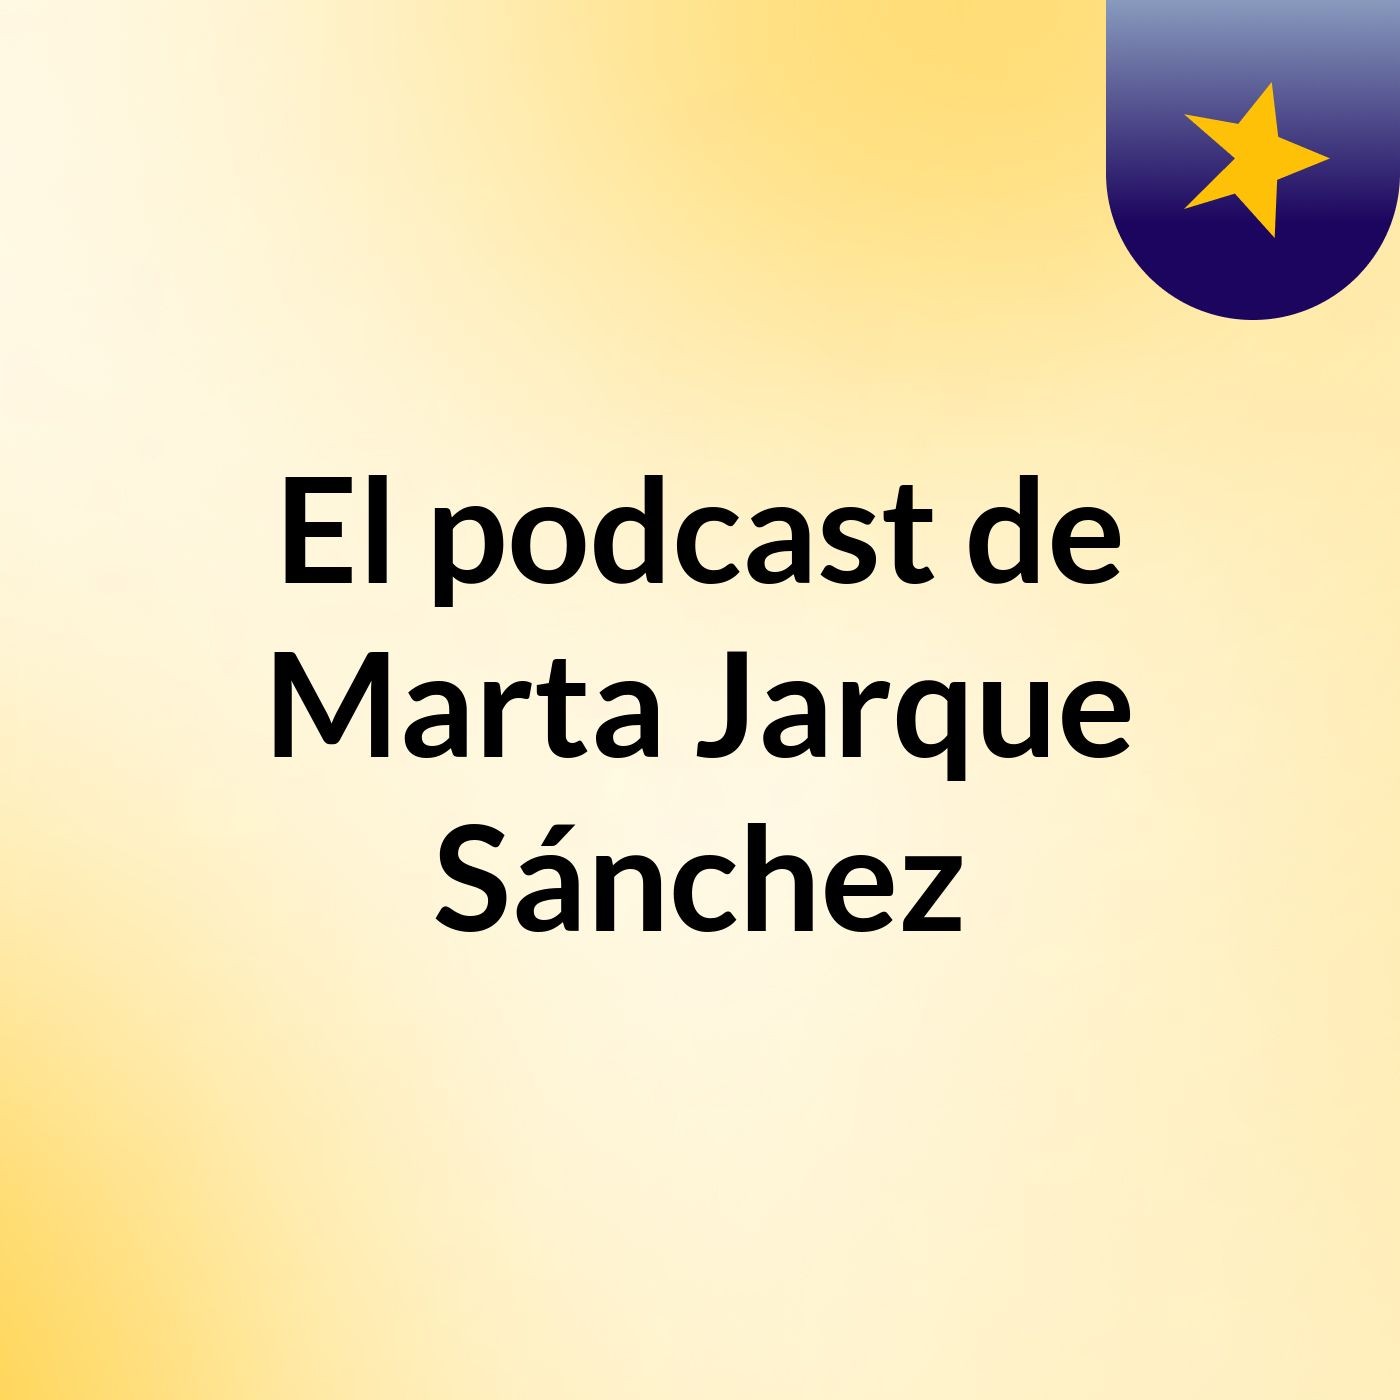 El podcast de Marta Jarque Sánchez